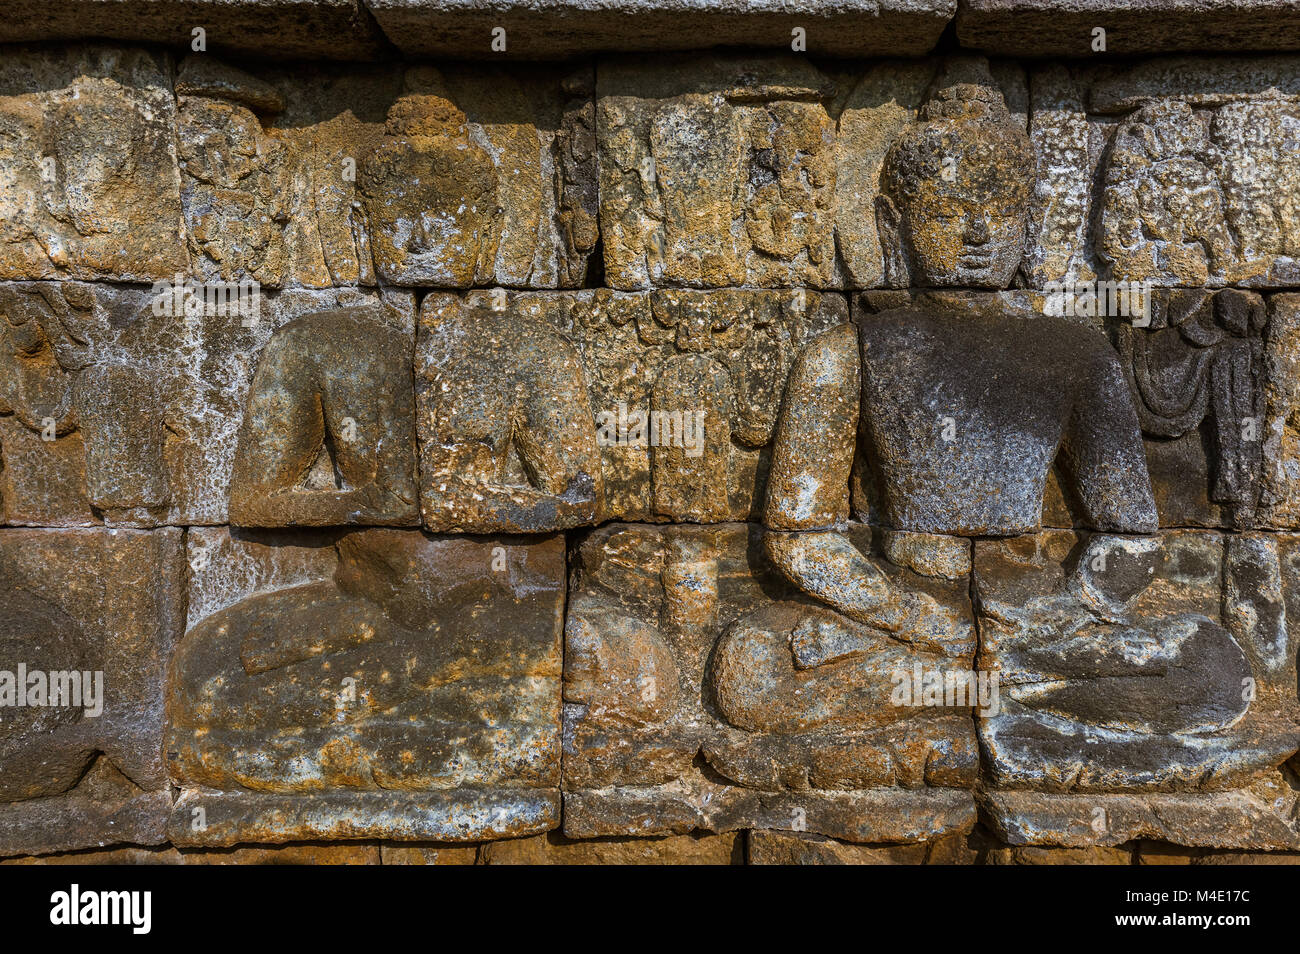 Bas-relief du Temple de Borobudur Buddist - île de Java Indonésie Banque D'Images